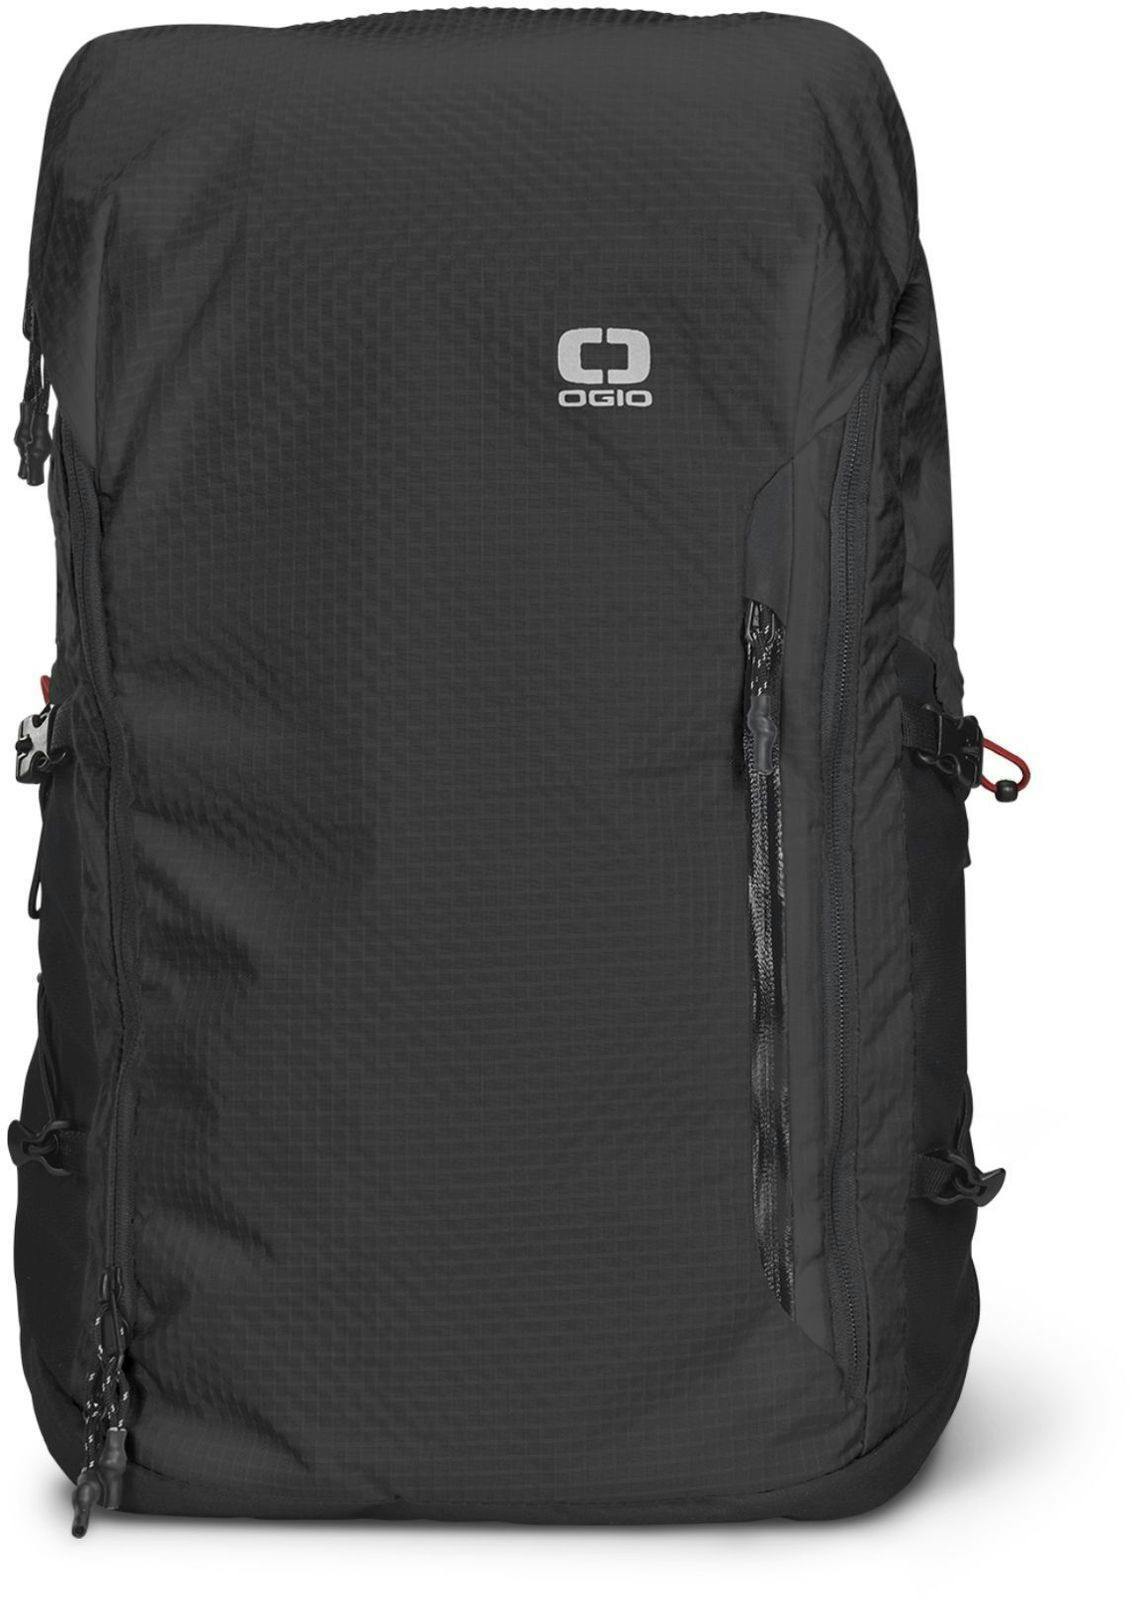 Ogio Fuse 25 Backpack · Black